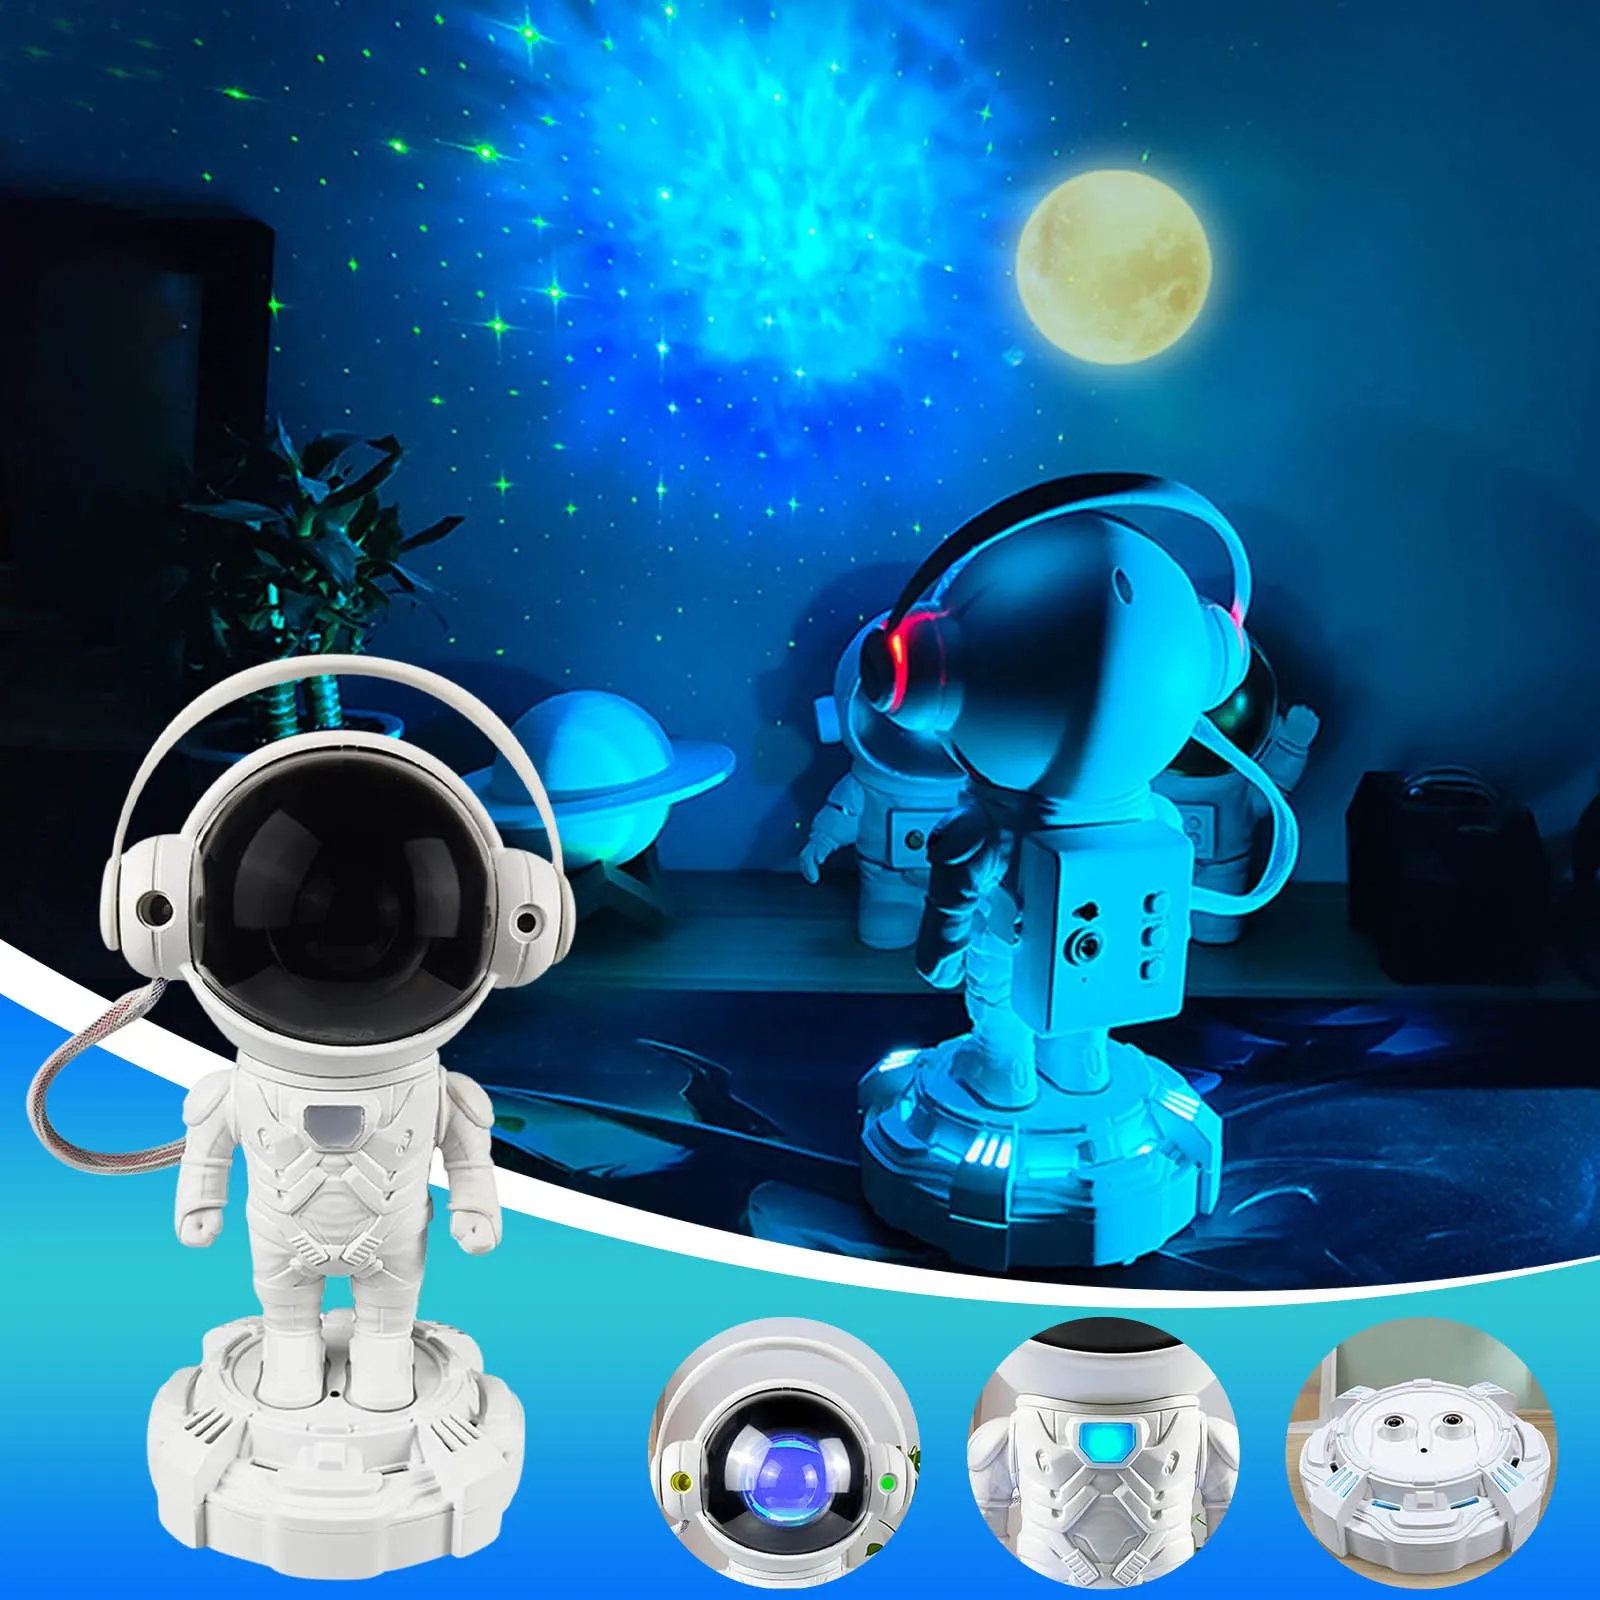 Multifunktions-Bluetooth-Lautsprecher, Astronauten-Sternlicht, Schlafzimmer, buntes Projektionslicht, Atmosphärenlicht, Raumfahrer-Ornamente, Nachtlicht